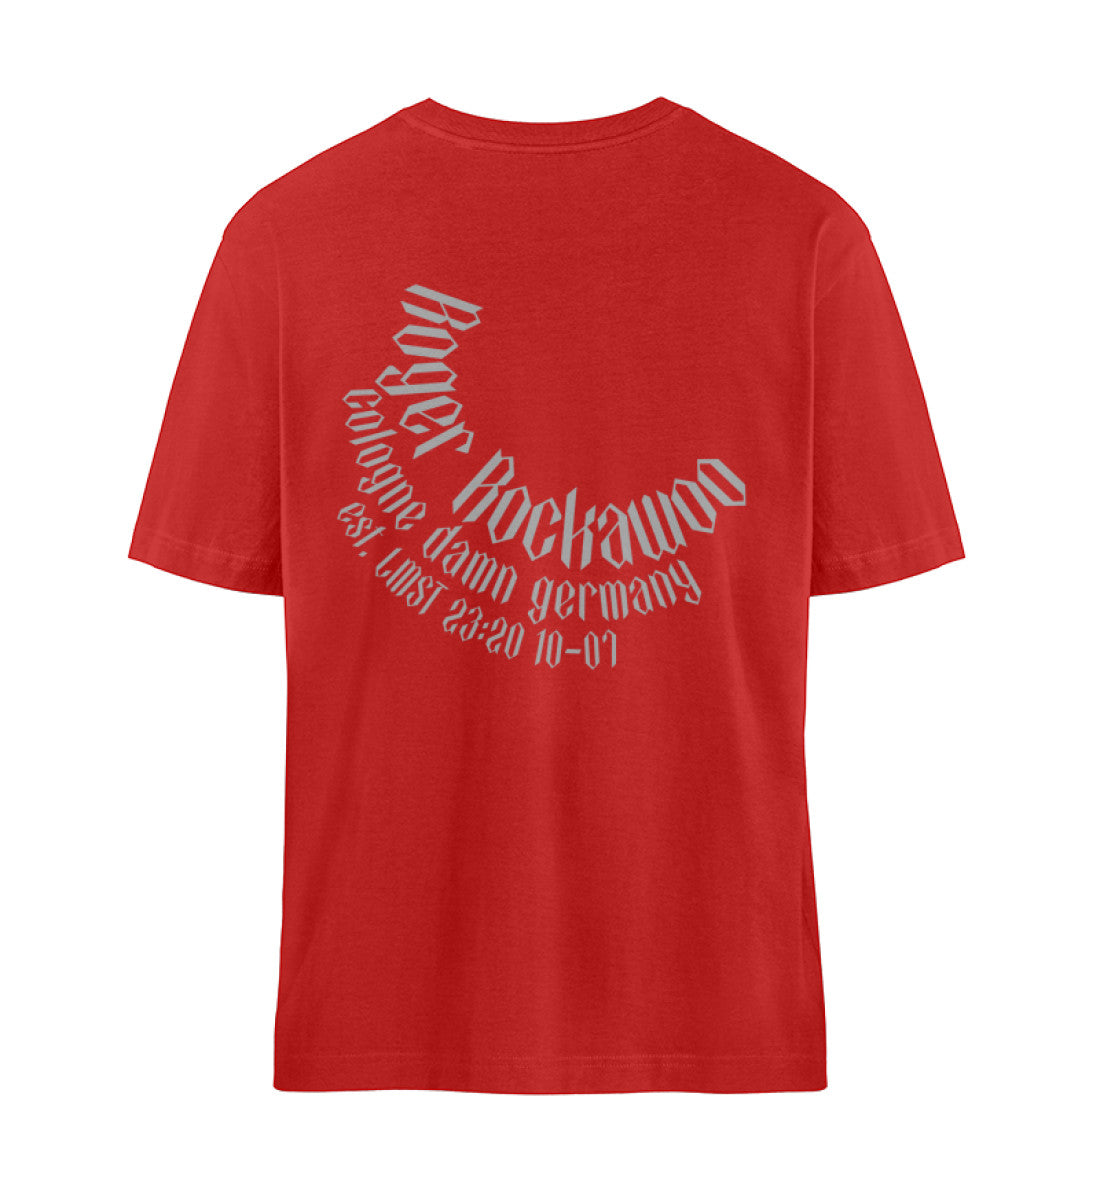 Rotes T-Shirt Unisex Relaxed Fit für Frauen und Männer bedruckt mit dem Design der Roger Rockawoo Kollektion Rocknroll never lies